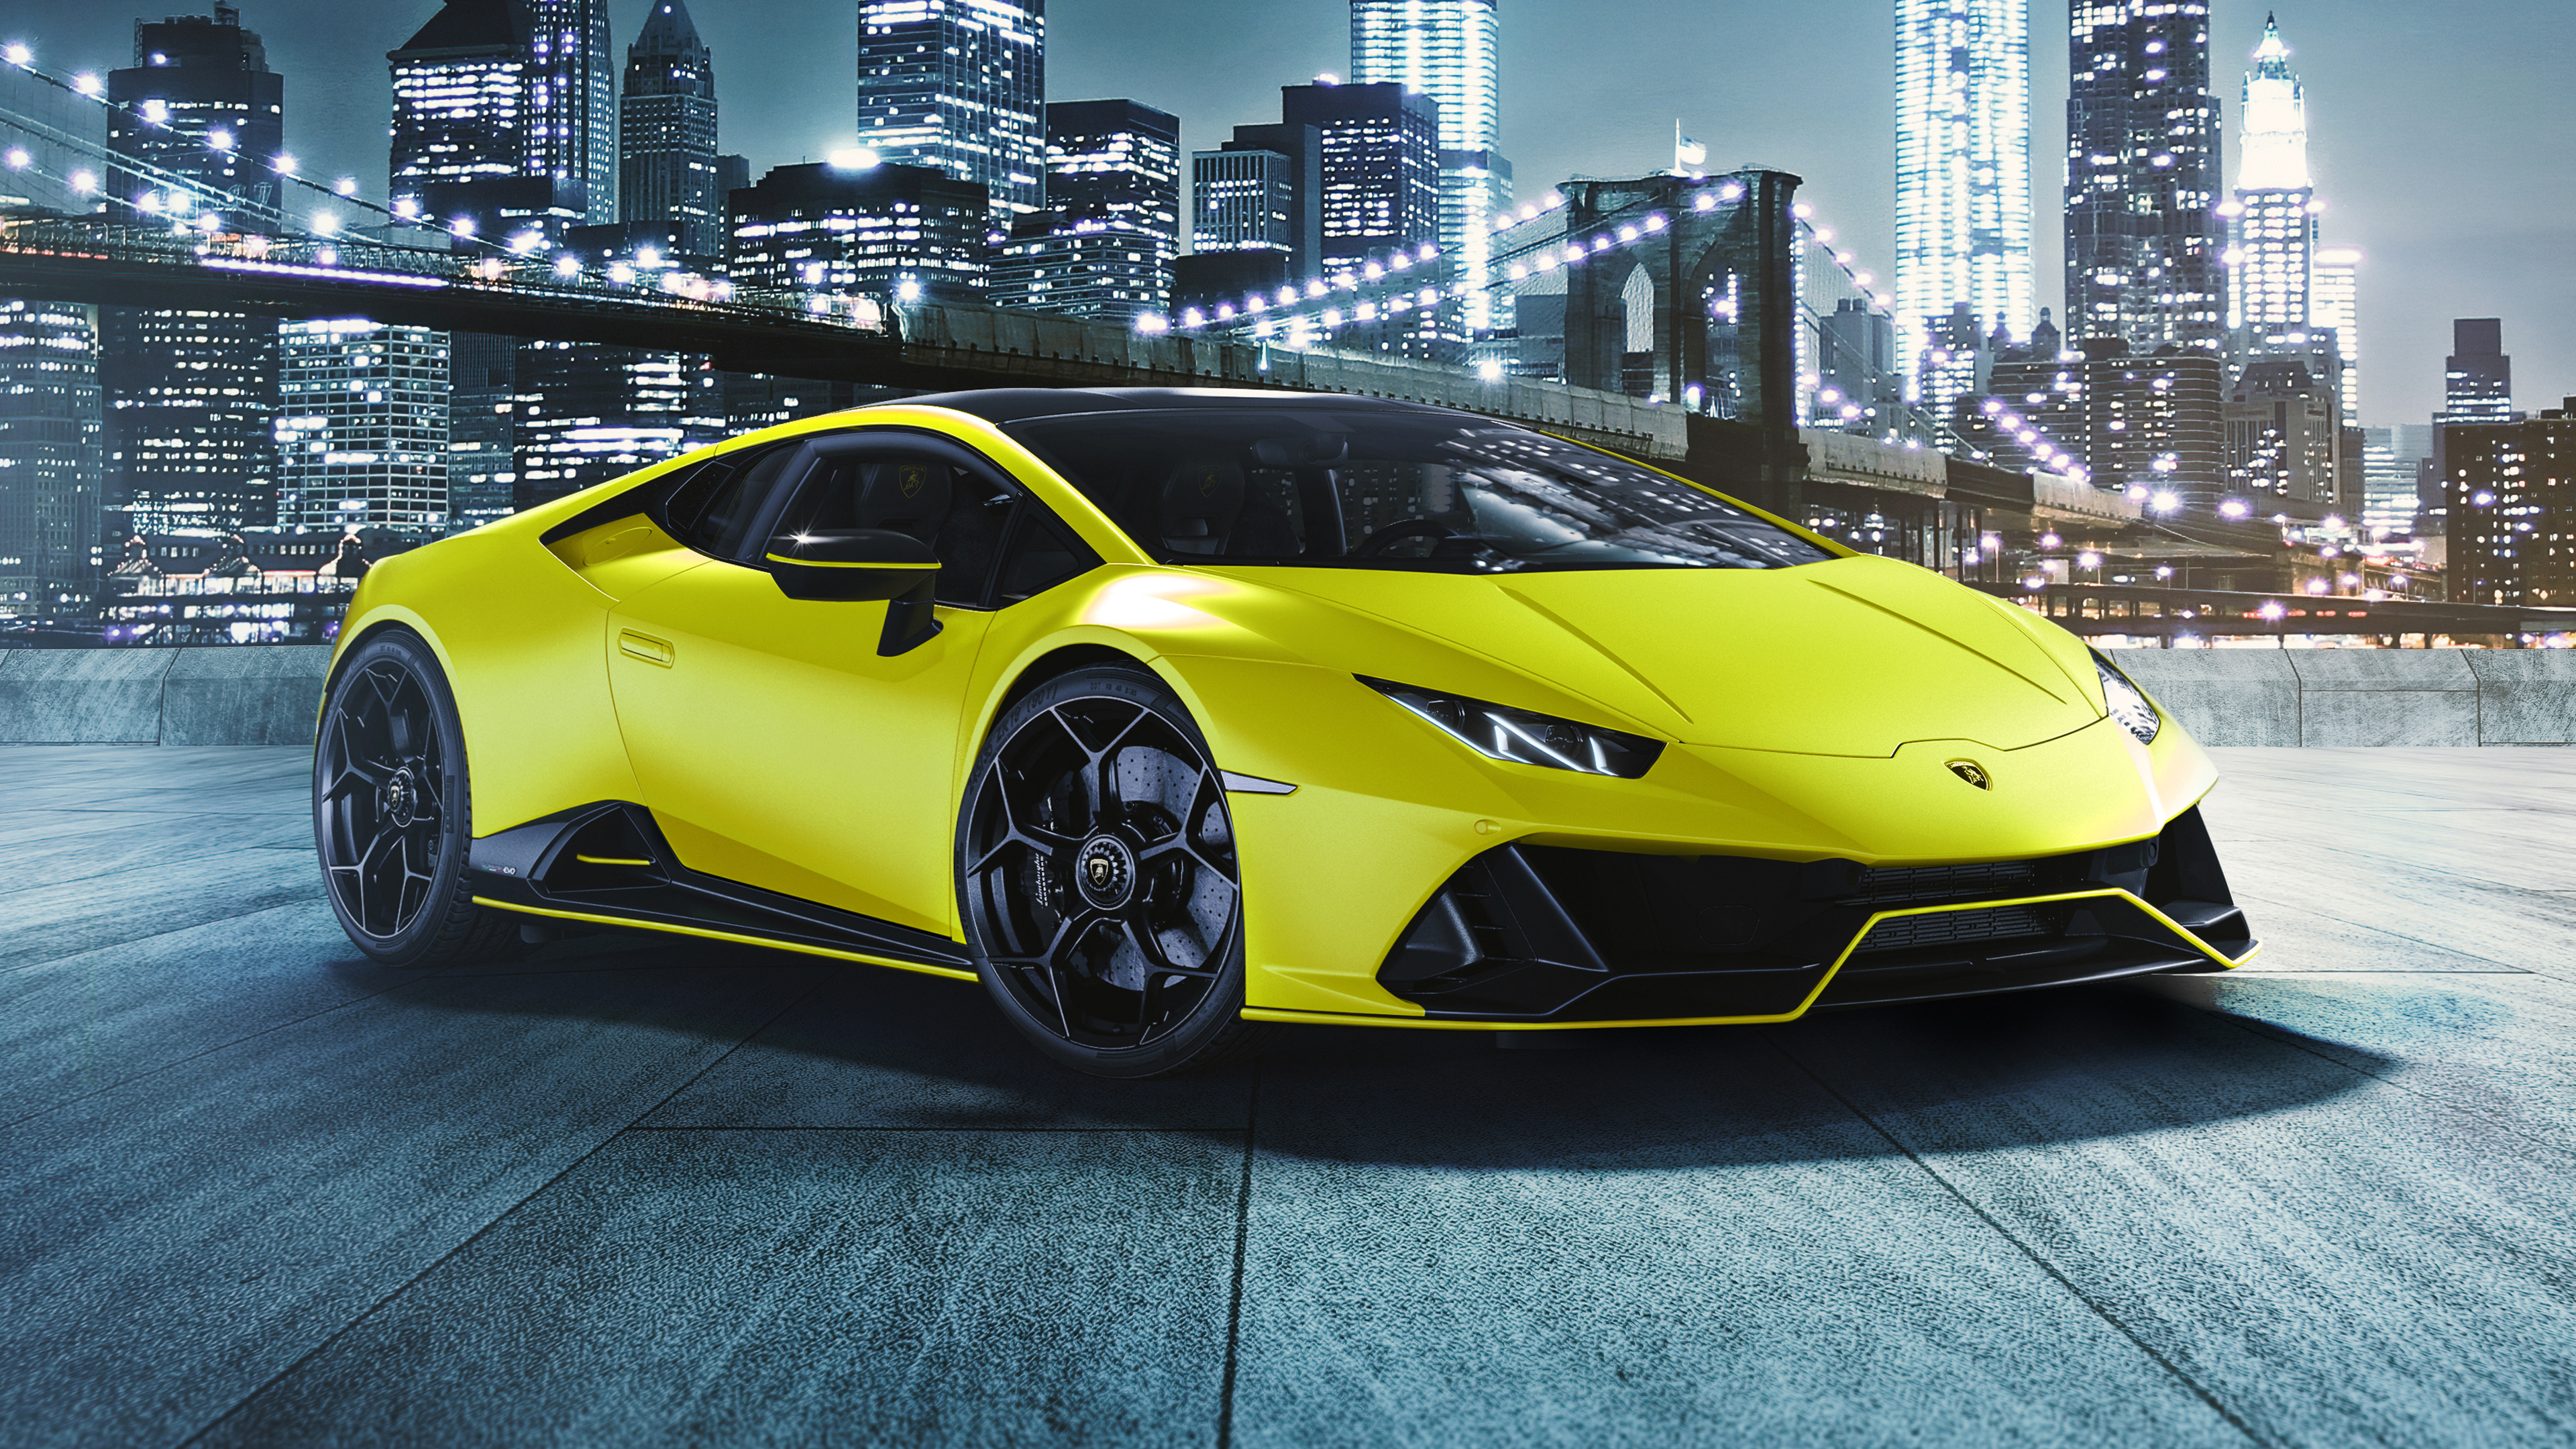 Bạn là một người yêu siêu xe Lamborghini? Hãy xem hình ảnh của Lamborghini Huracán EVO Fluo Capsule - một phiên bản đặc biệt với tính năng hiện đại, thiết kế đậm chất cá tính và sự nổi bật với hệ thống ánh sáng đặc biệt. Chắc chắn rằng bạn sẽ thích mê với mẫu xe này!